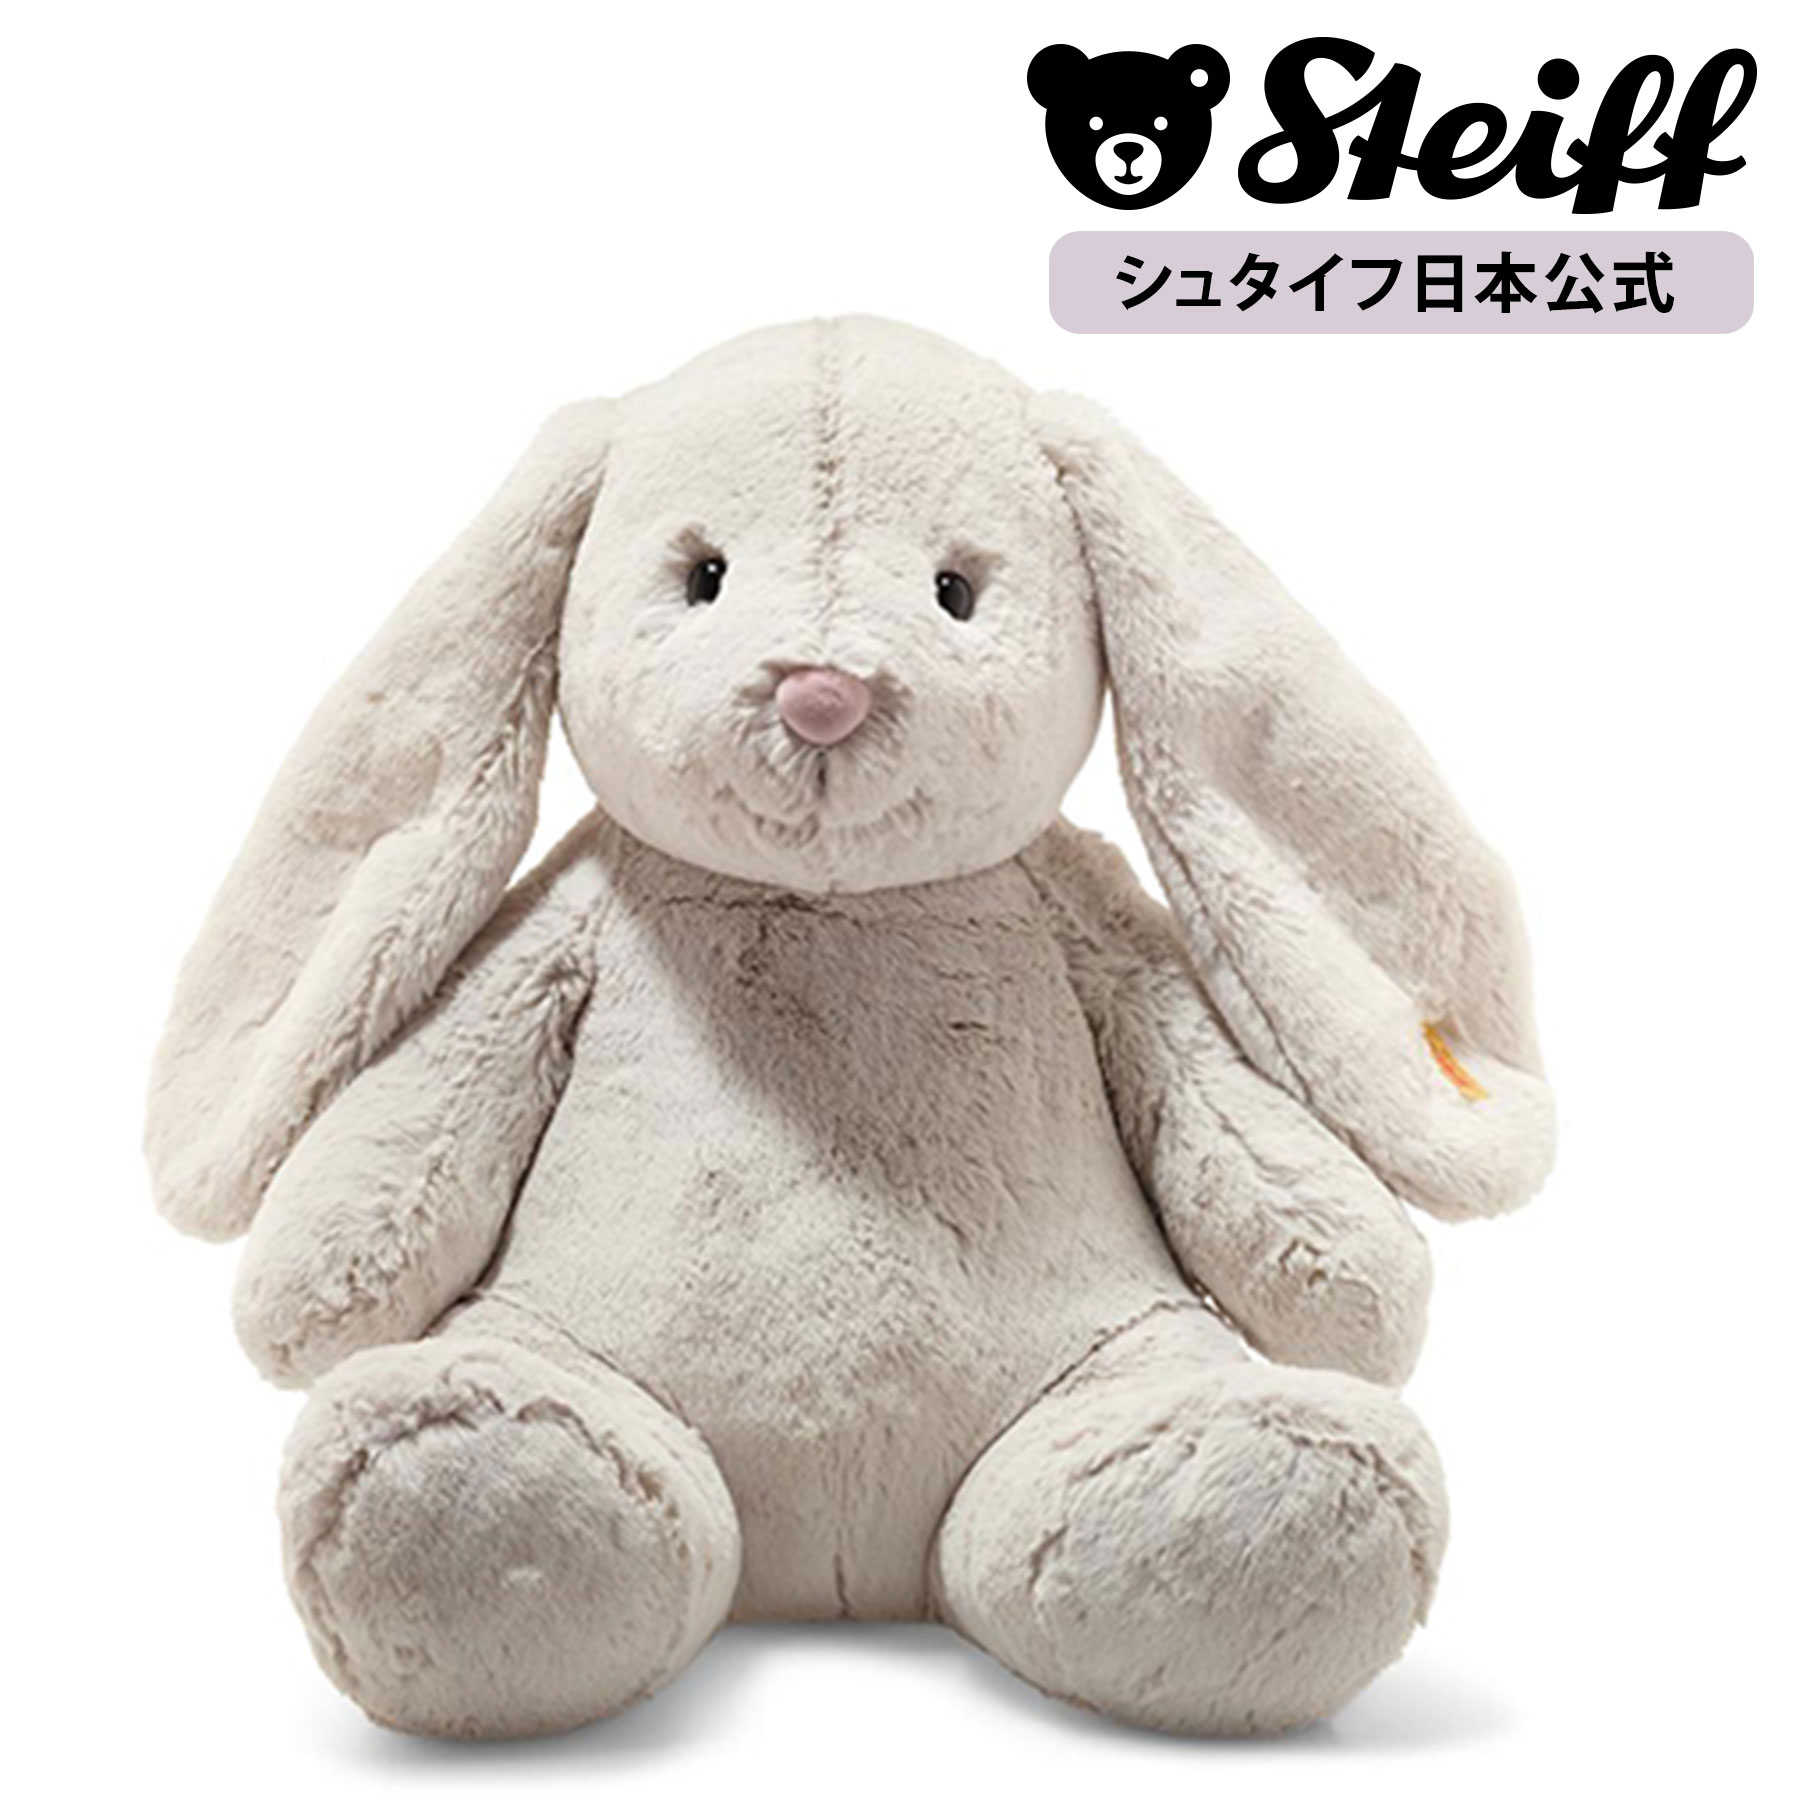 【シュタイフ公式】ウサギのホッピー 48cm ぬいぐるみ 動物 うさぎ ウサギ 兎 rabbit プレゼント ギフト 贈り物 出産祝い steiff シュタイフ ドイツ